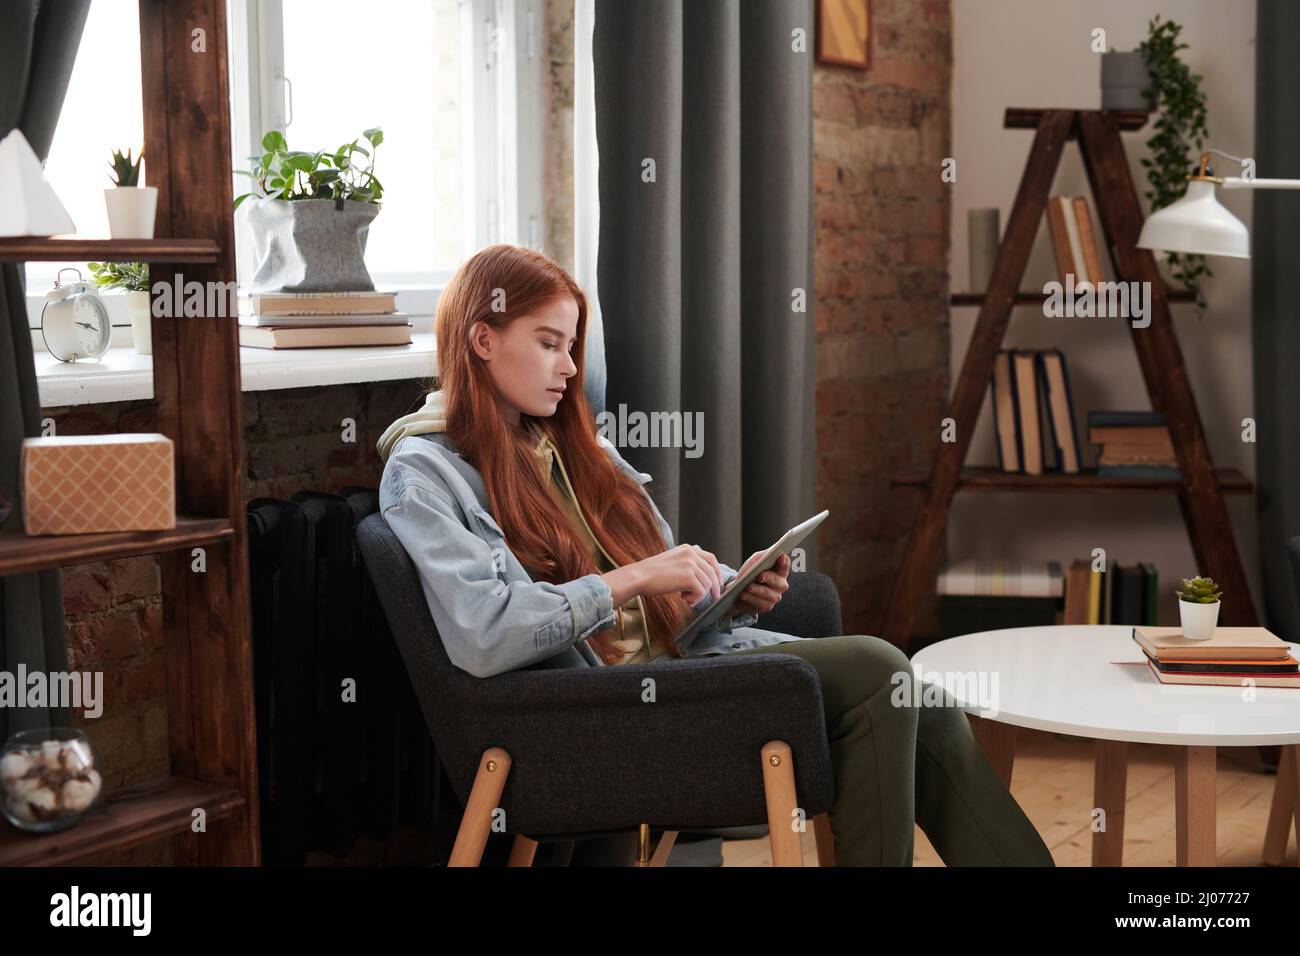 Horizontale mittlere lange Seitenansicht Aufnahme der schönen Frau mit langen roten Haaren sitzen entspannt im Stuhl im Wohnzimmer Surfen Interent auf digitalem Tablet Stockfoto